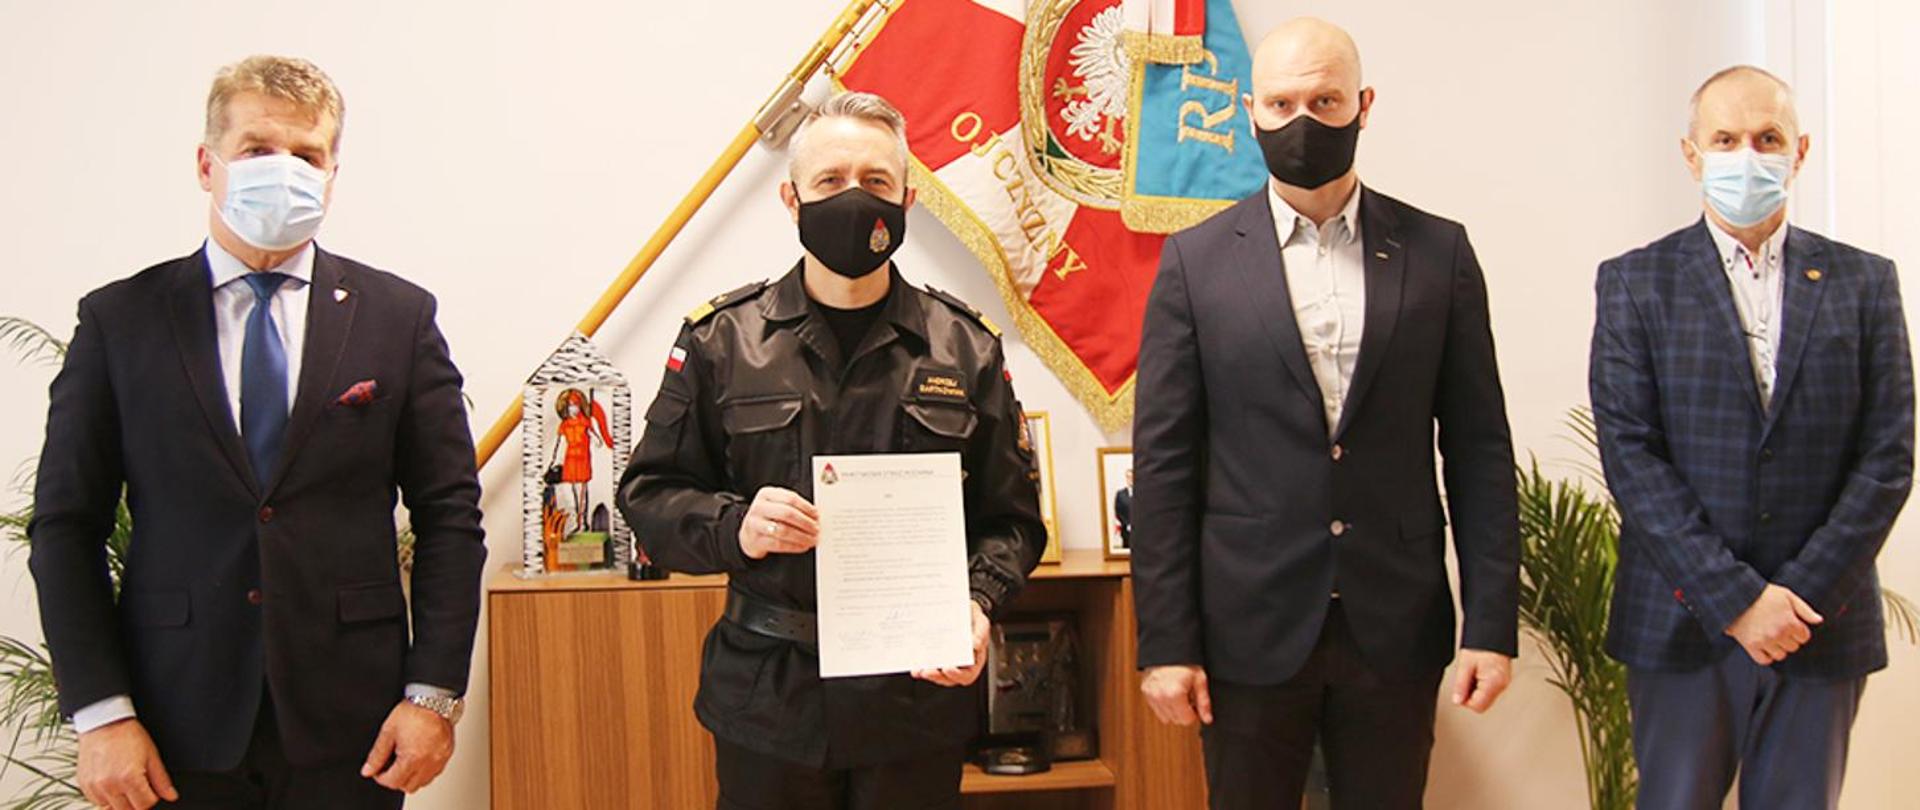 Zdjęcie przedstawiające Komendanta Głównego Państwowej Straży Pożarnej nadbryg. Andrzej Bartkowiak, wraz z przedstawicielami Związków Zawodowych działających w PSP